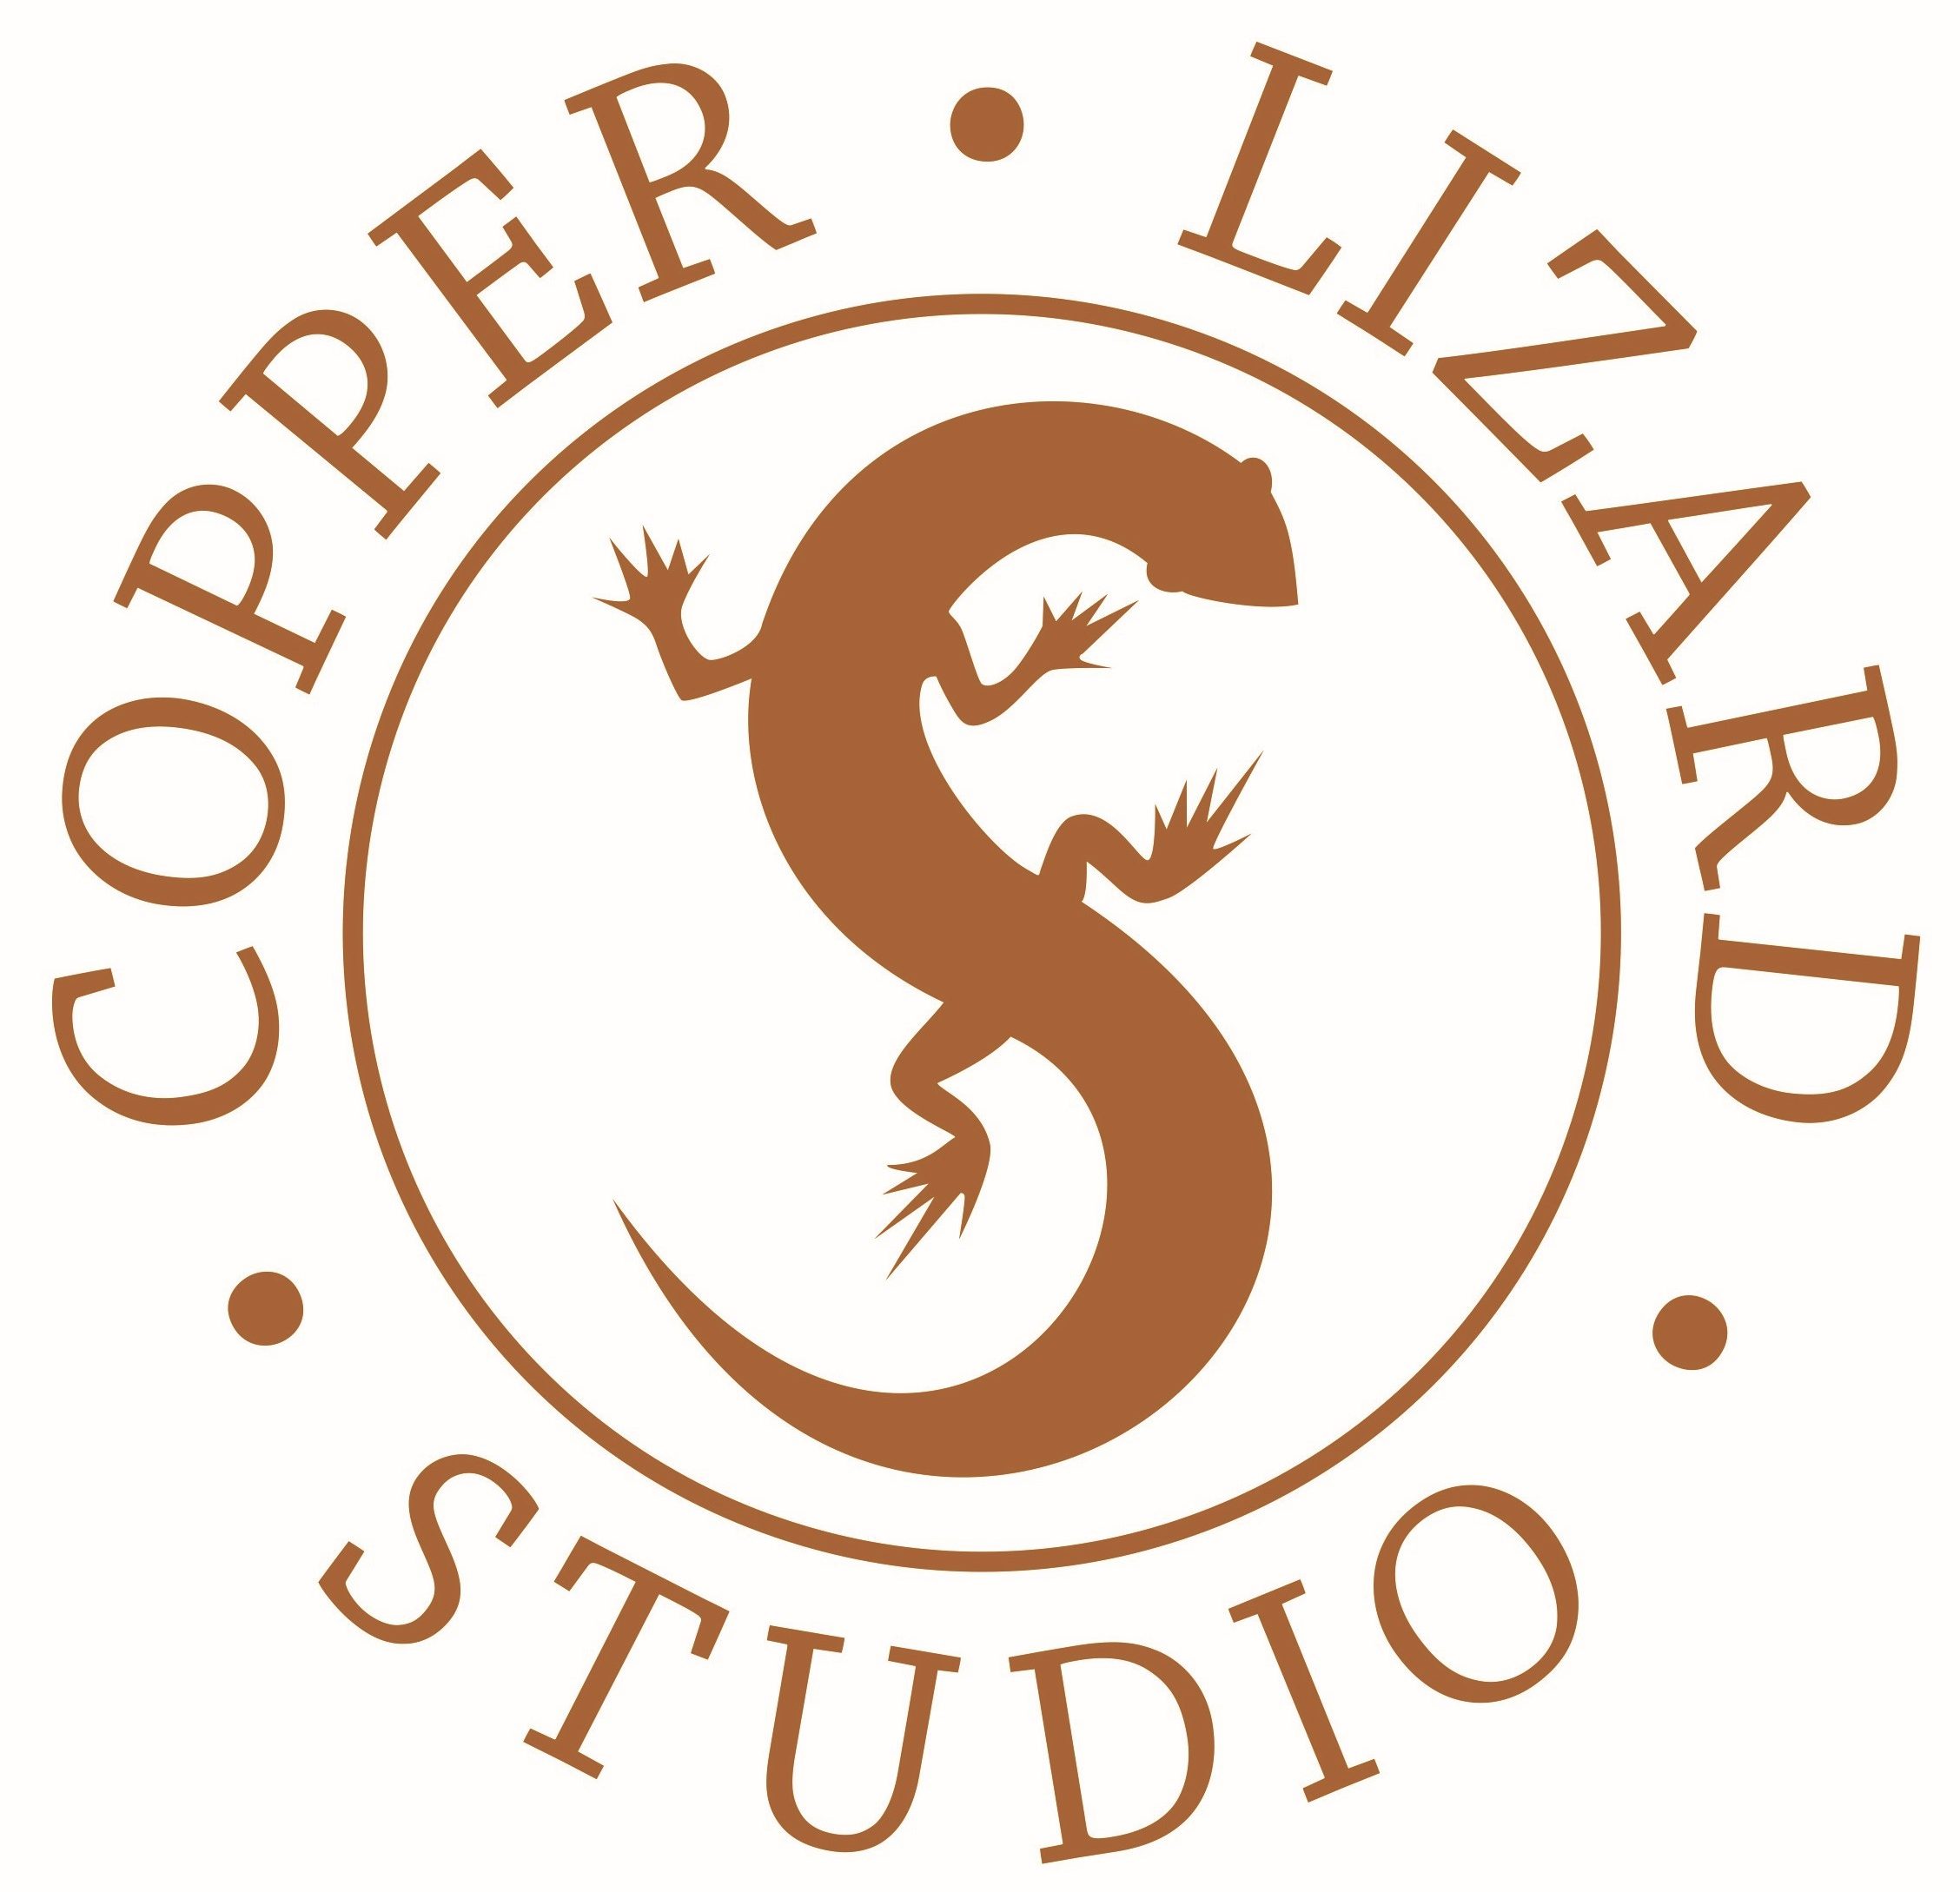 Copper Lizard Studio: What’s in a Name?